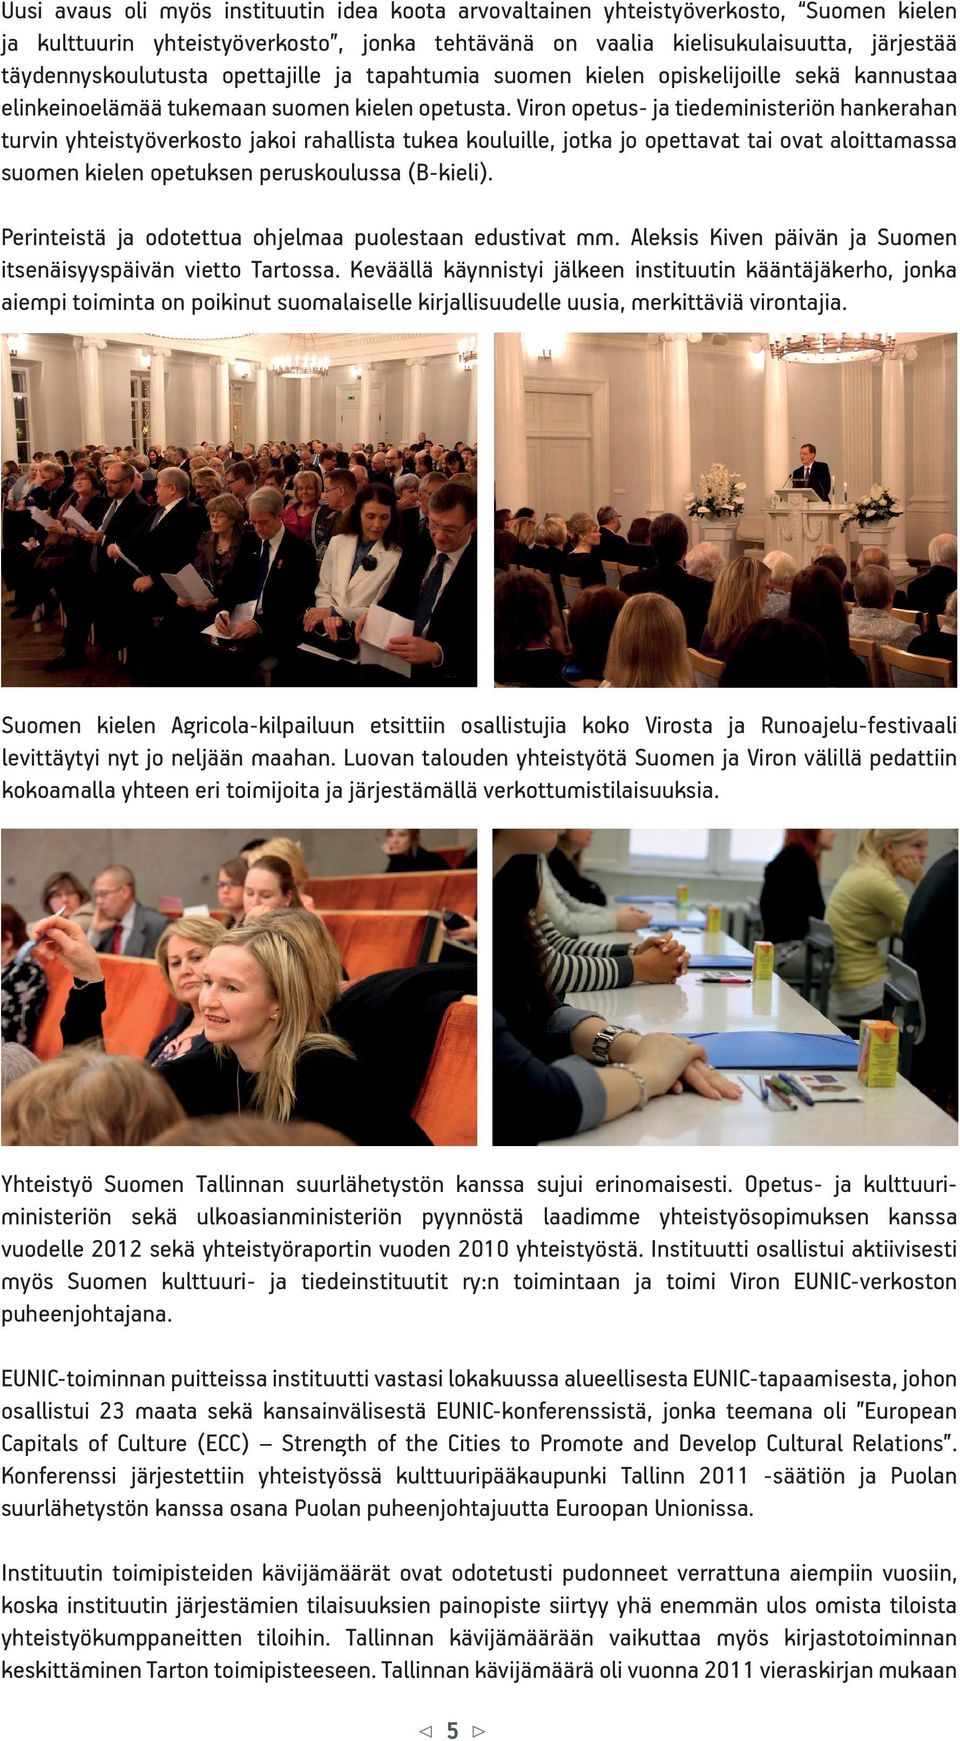 Viron opetus- ja tiedeministeriön hankerahan turvin yhteistyöverkosto jakoi rahallista tukea kouluille, jotka jo opettavat tai ovat aloittamassa suomen kielen opetuksen peruskoulussa (B-kieli).